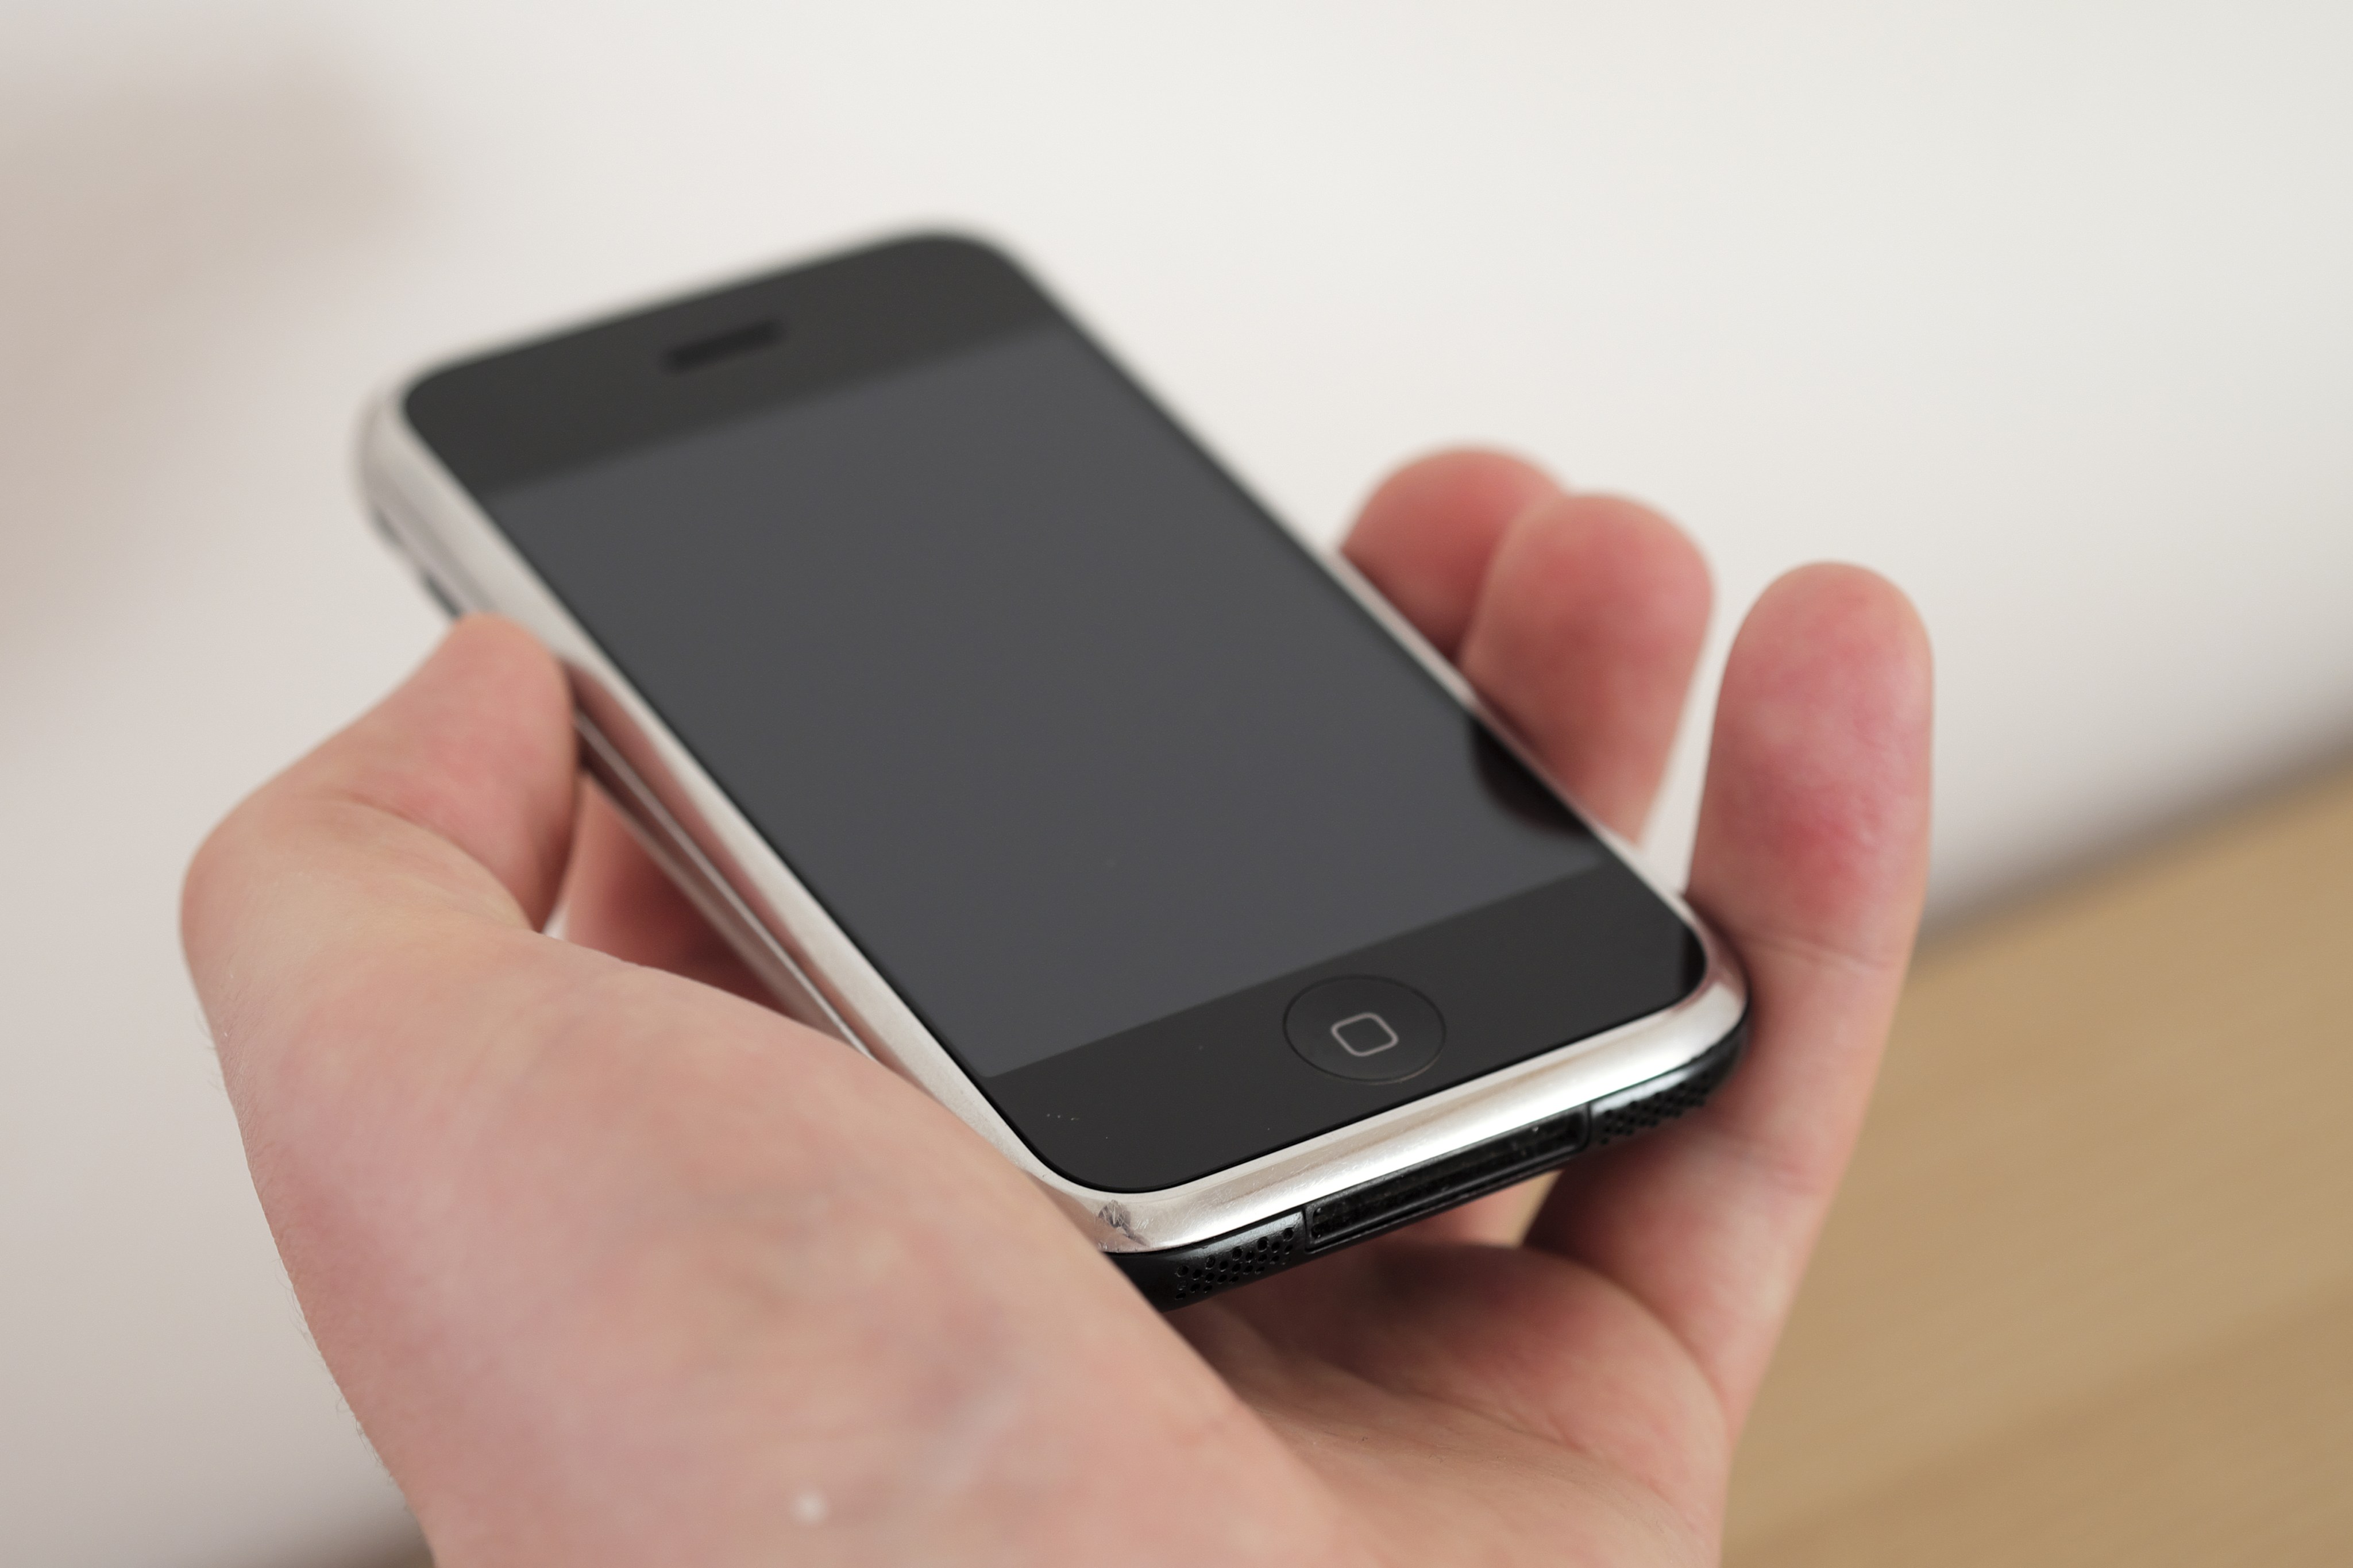 Todo un lujo: iPhone 1 se vende hasta en $10,000 - El Diario NY